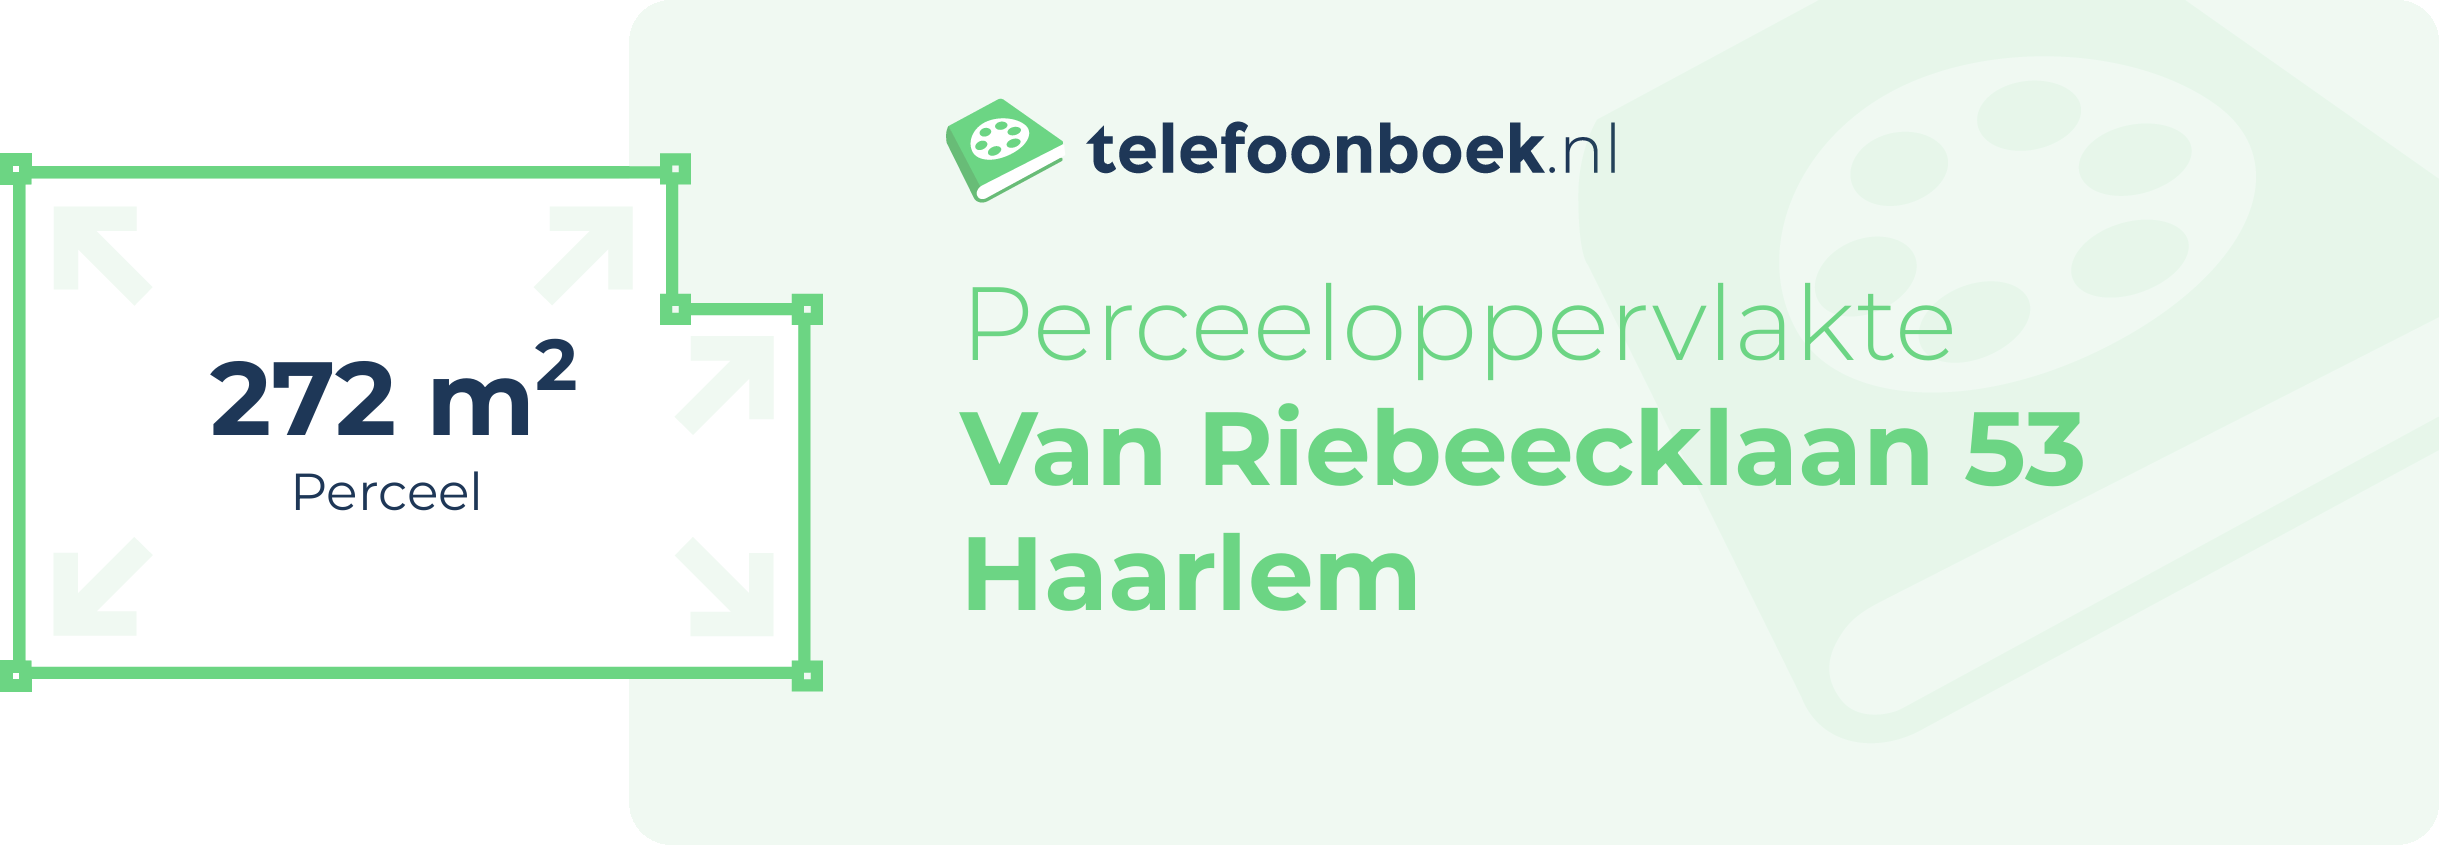 Perceeloppervlakte Van Riebeecklaan 53 Haarlem